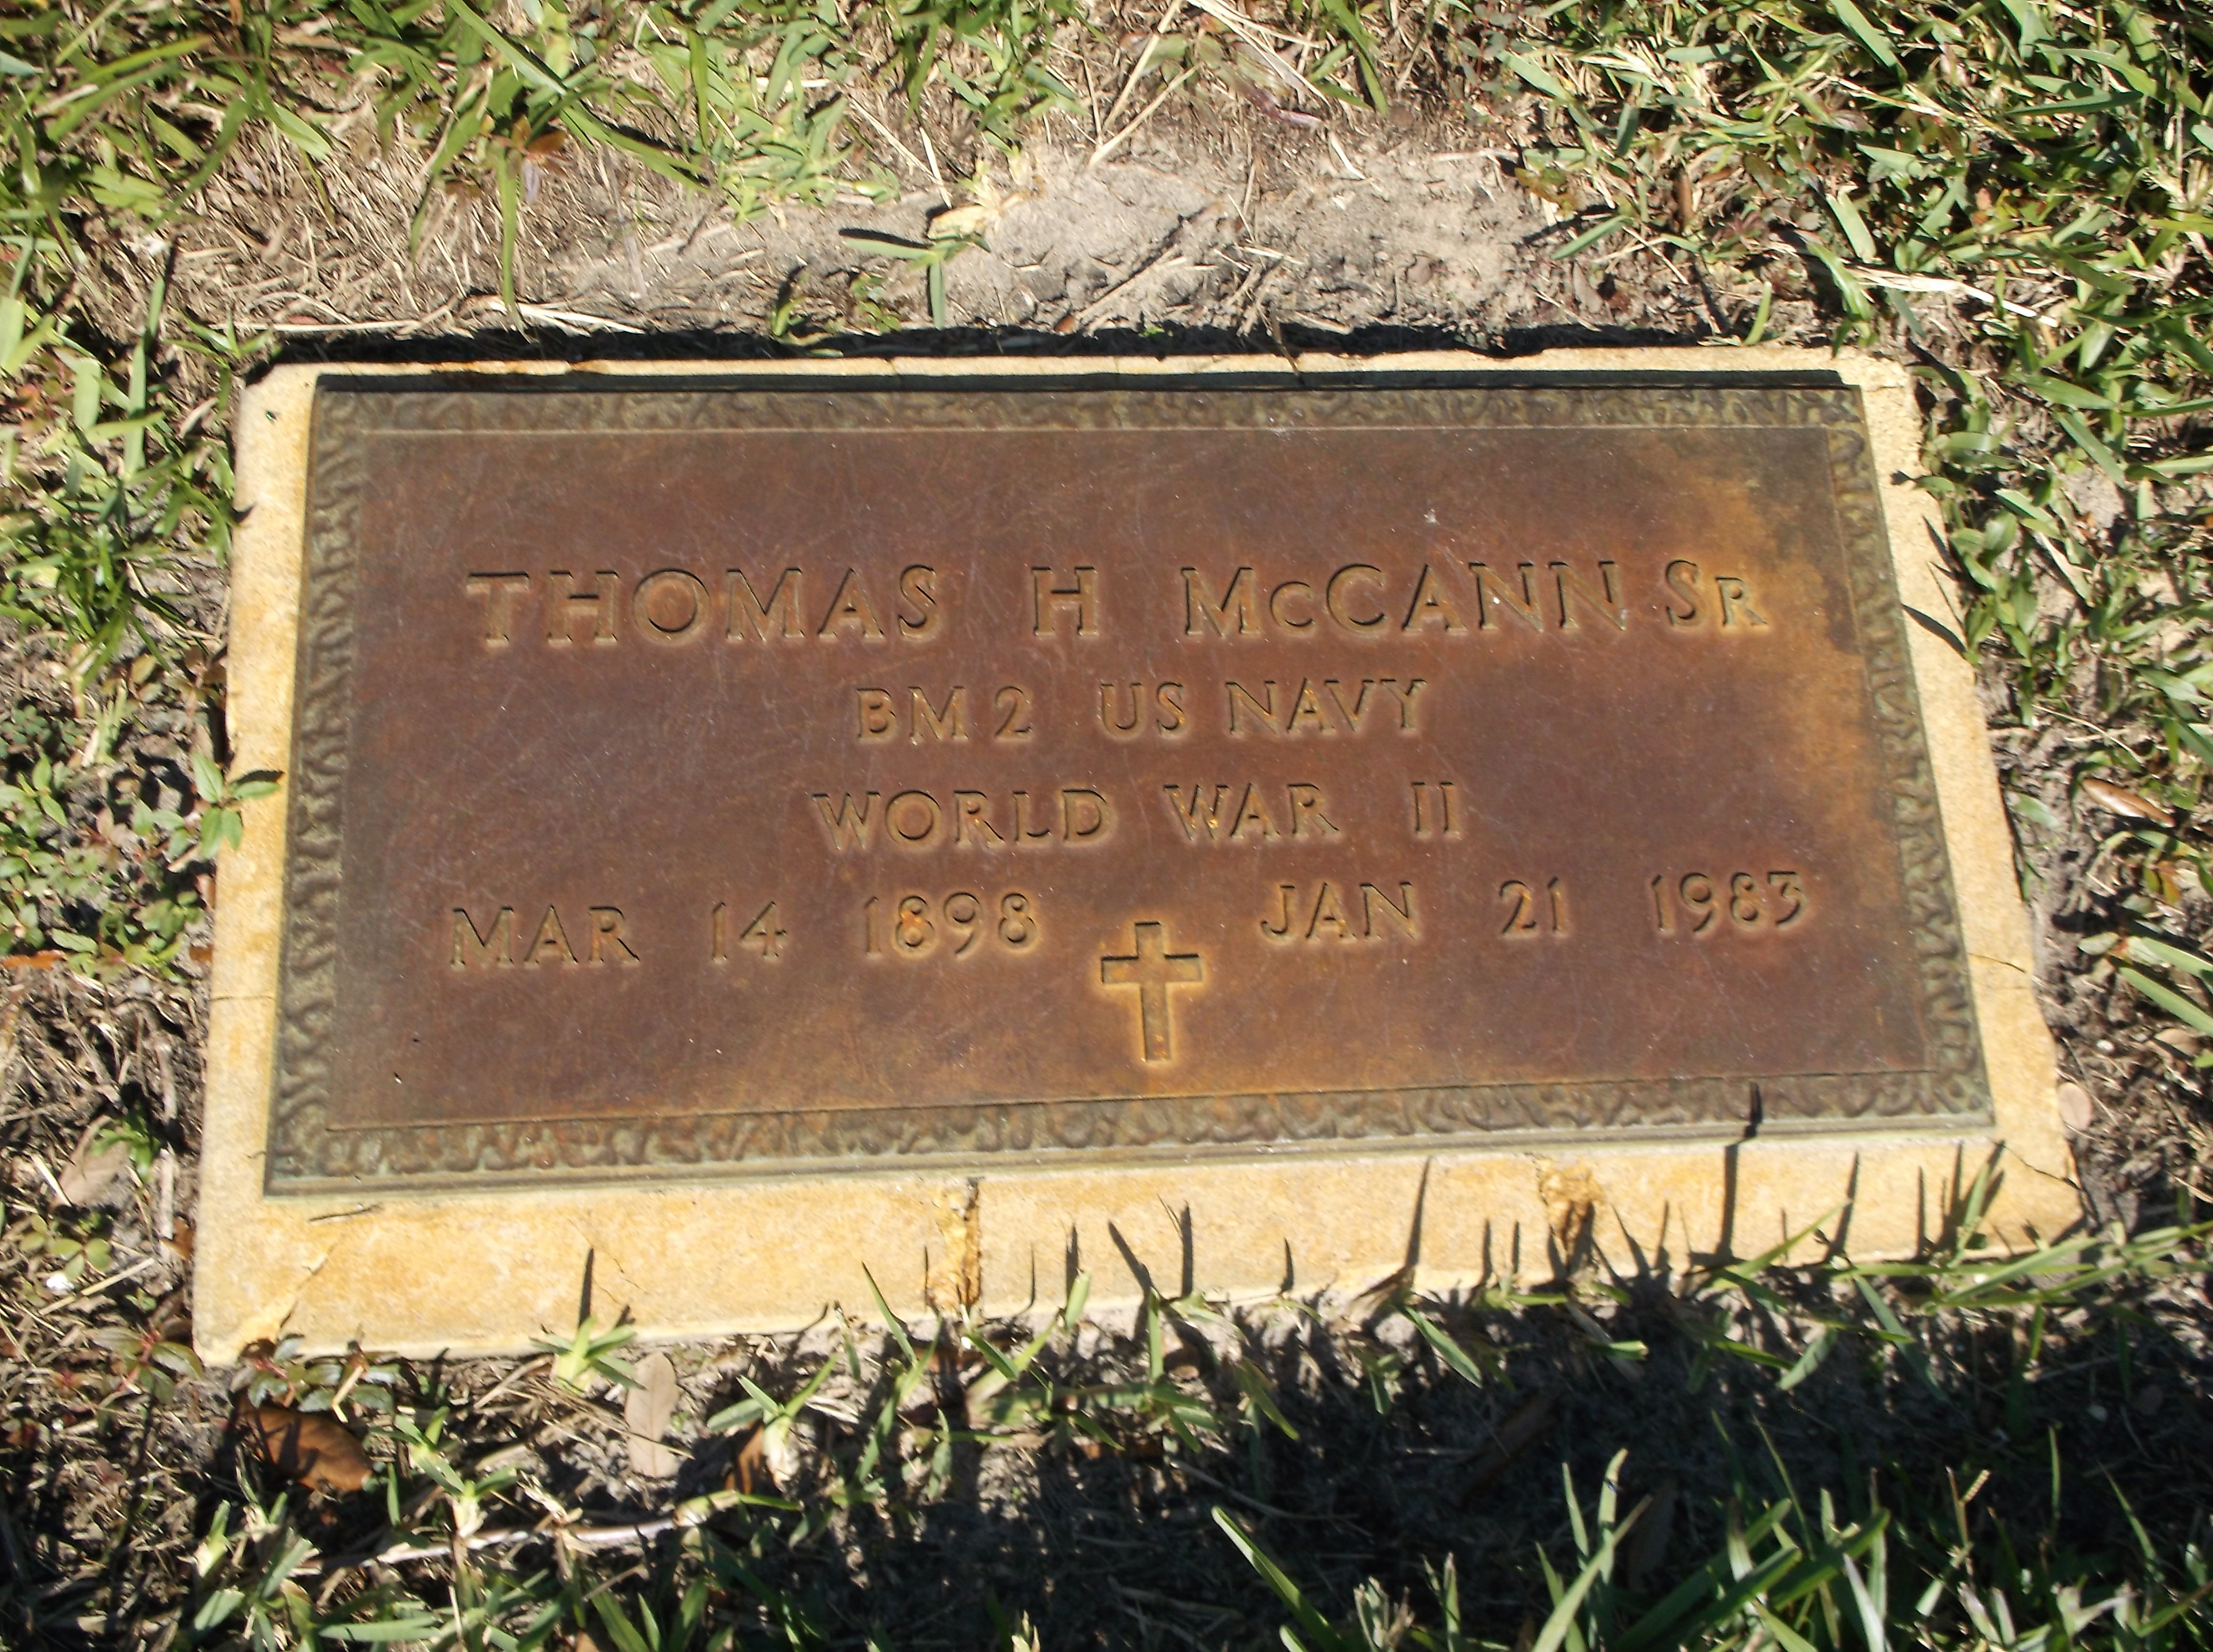 Thomas H McCann, Sr